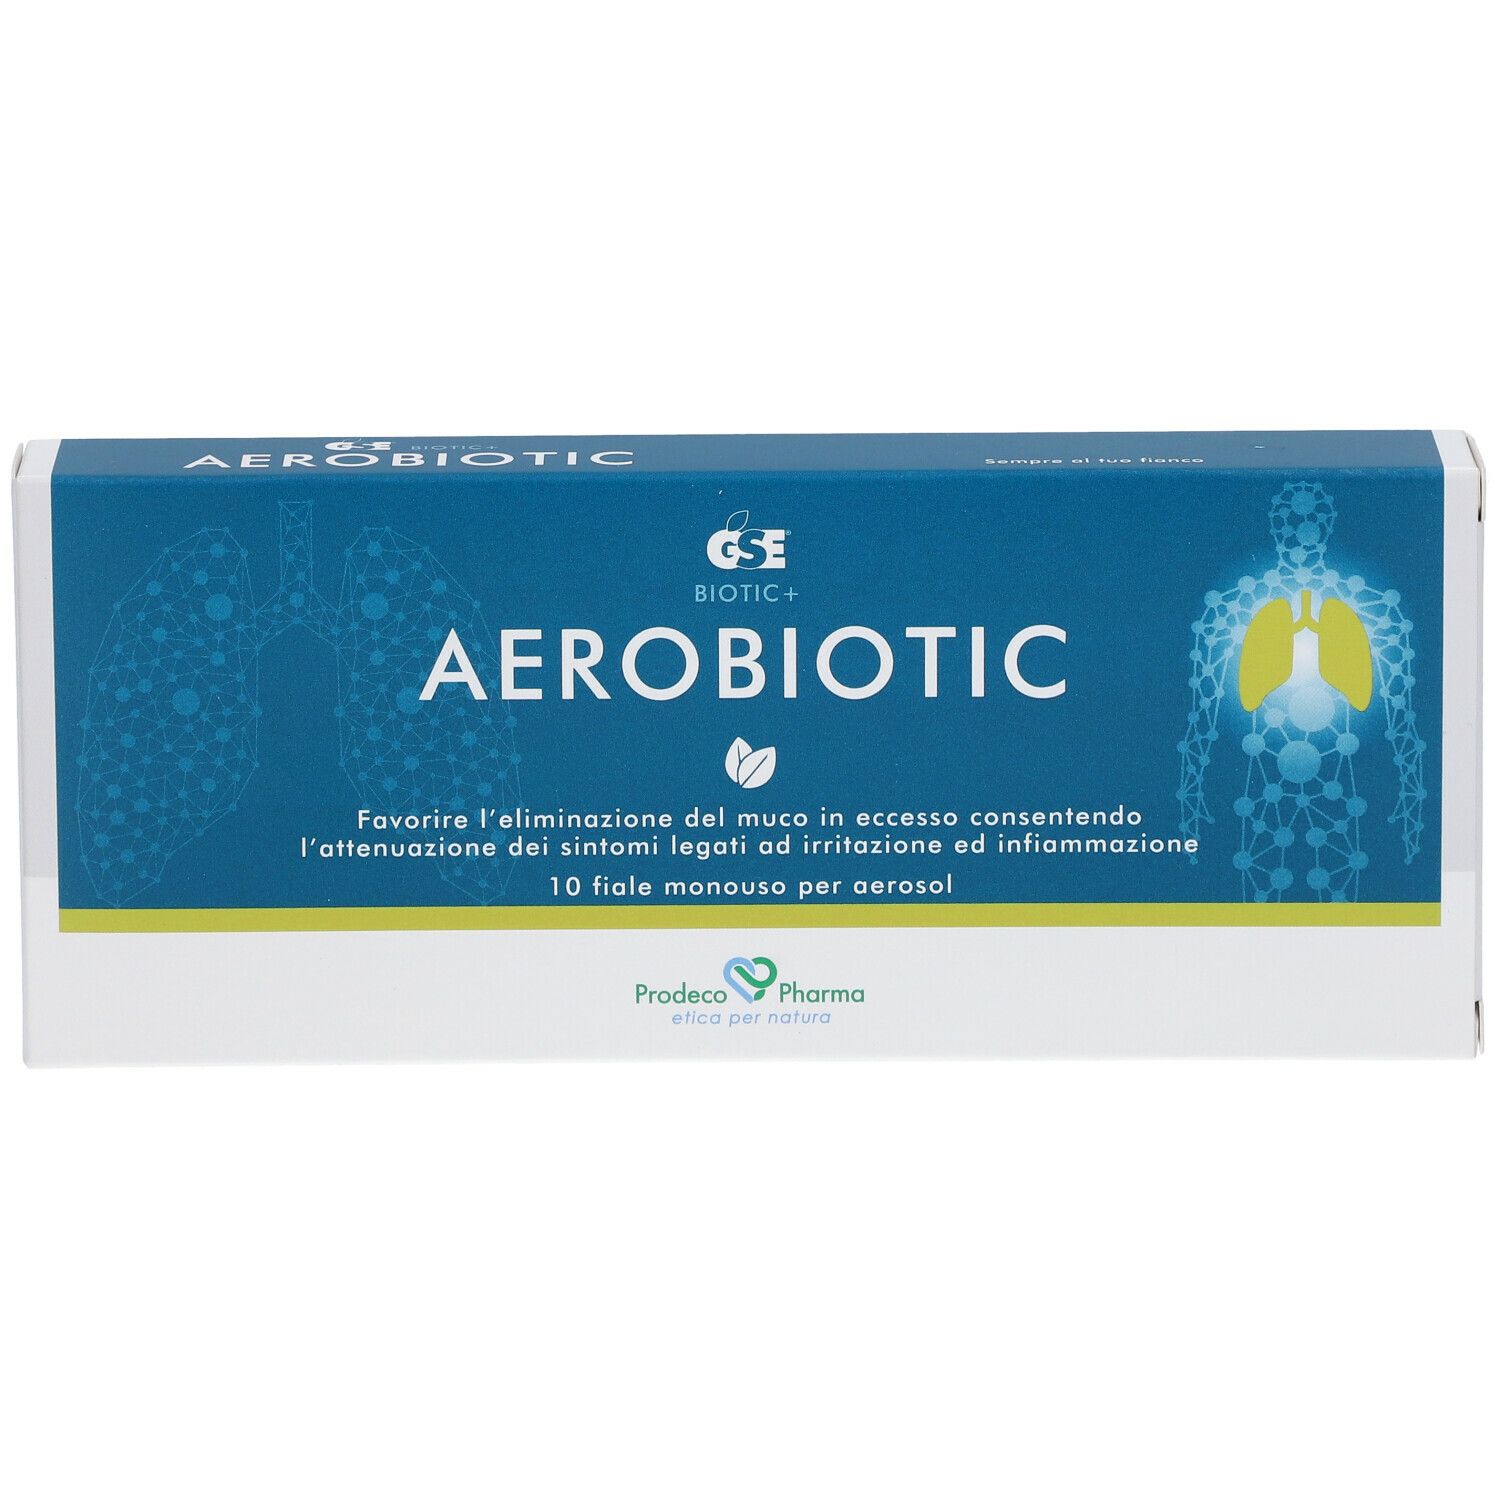 Gse® Aerobiotic Soluzione per Aerosol